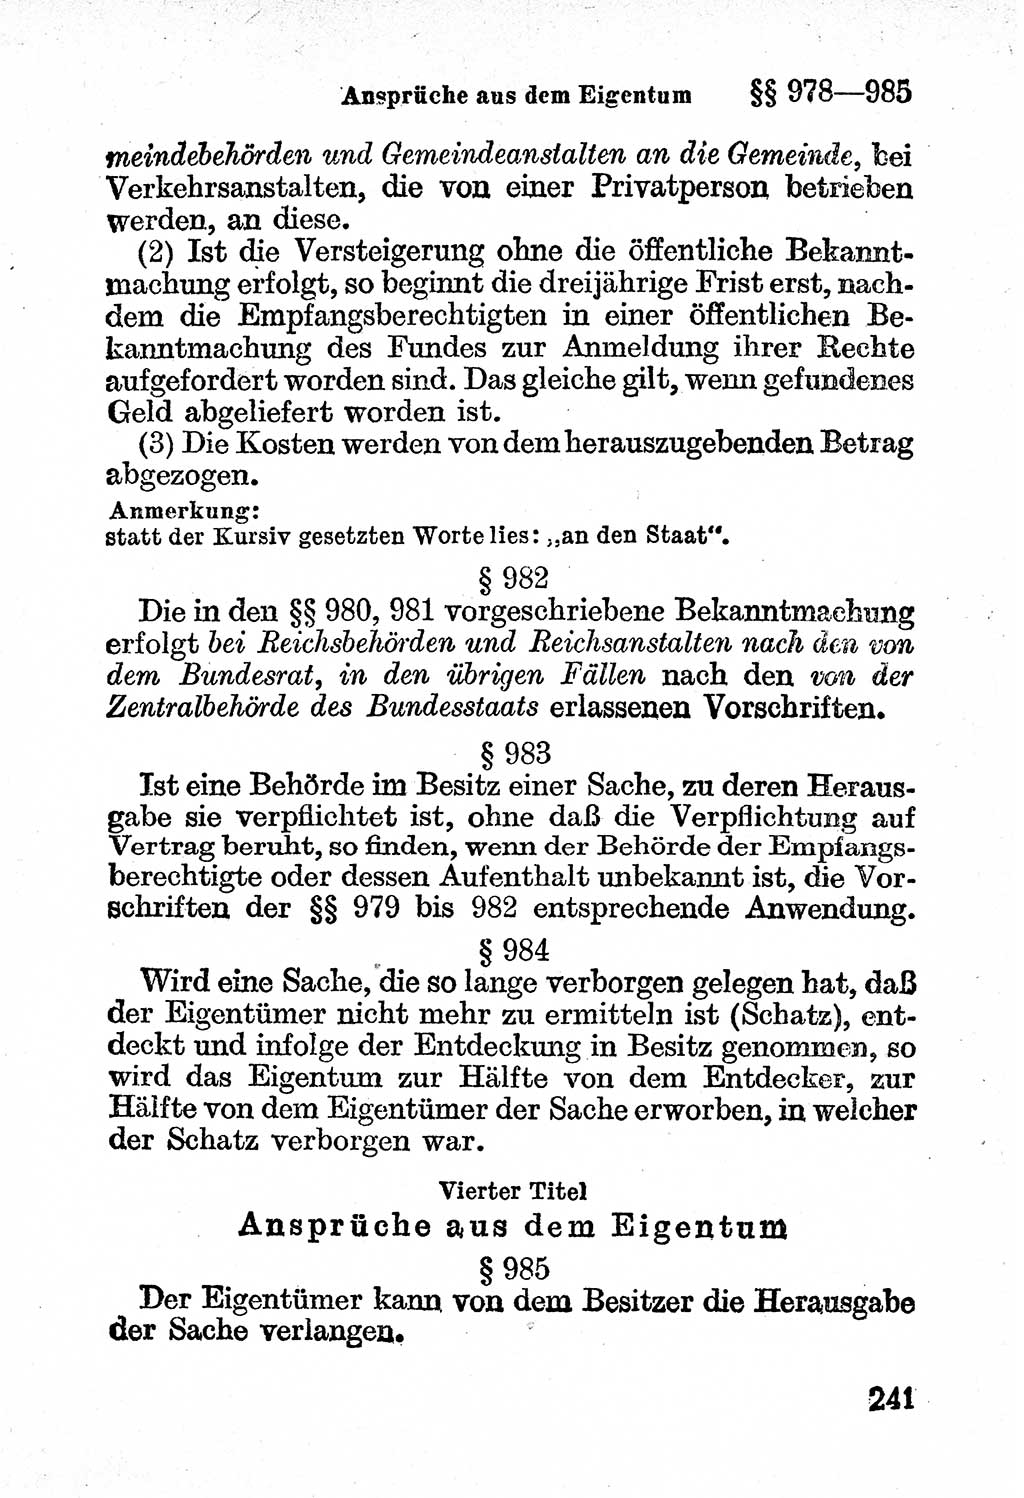 Bürgerliches Gesetzbuch (BGB) nebst wichtigen Nebengesetzen [Deutsche Demokratische Republik (DDR)] 1956, Seite 241 (BGB Nebenges. DDR 1956, S. 241)